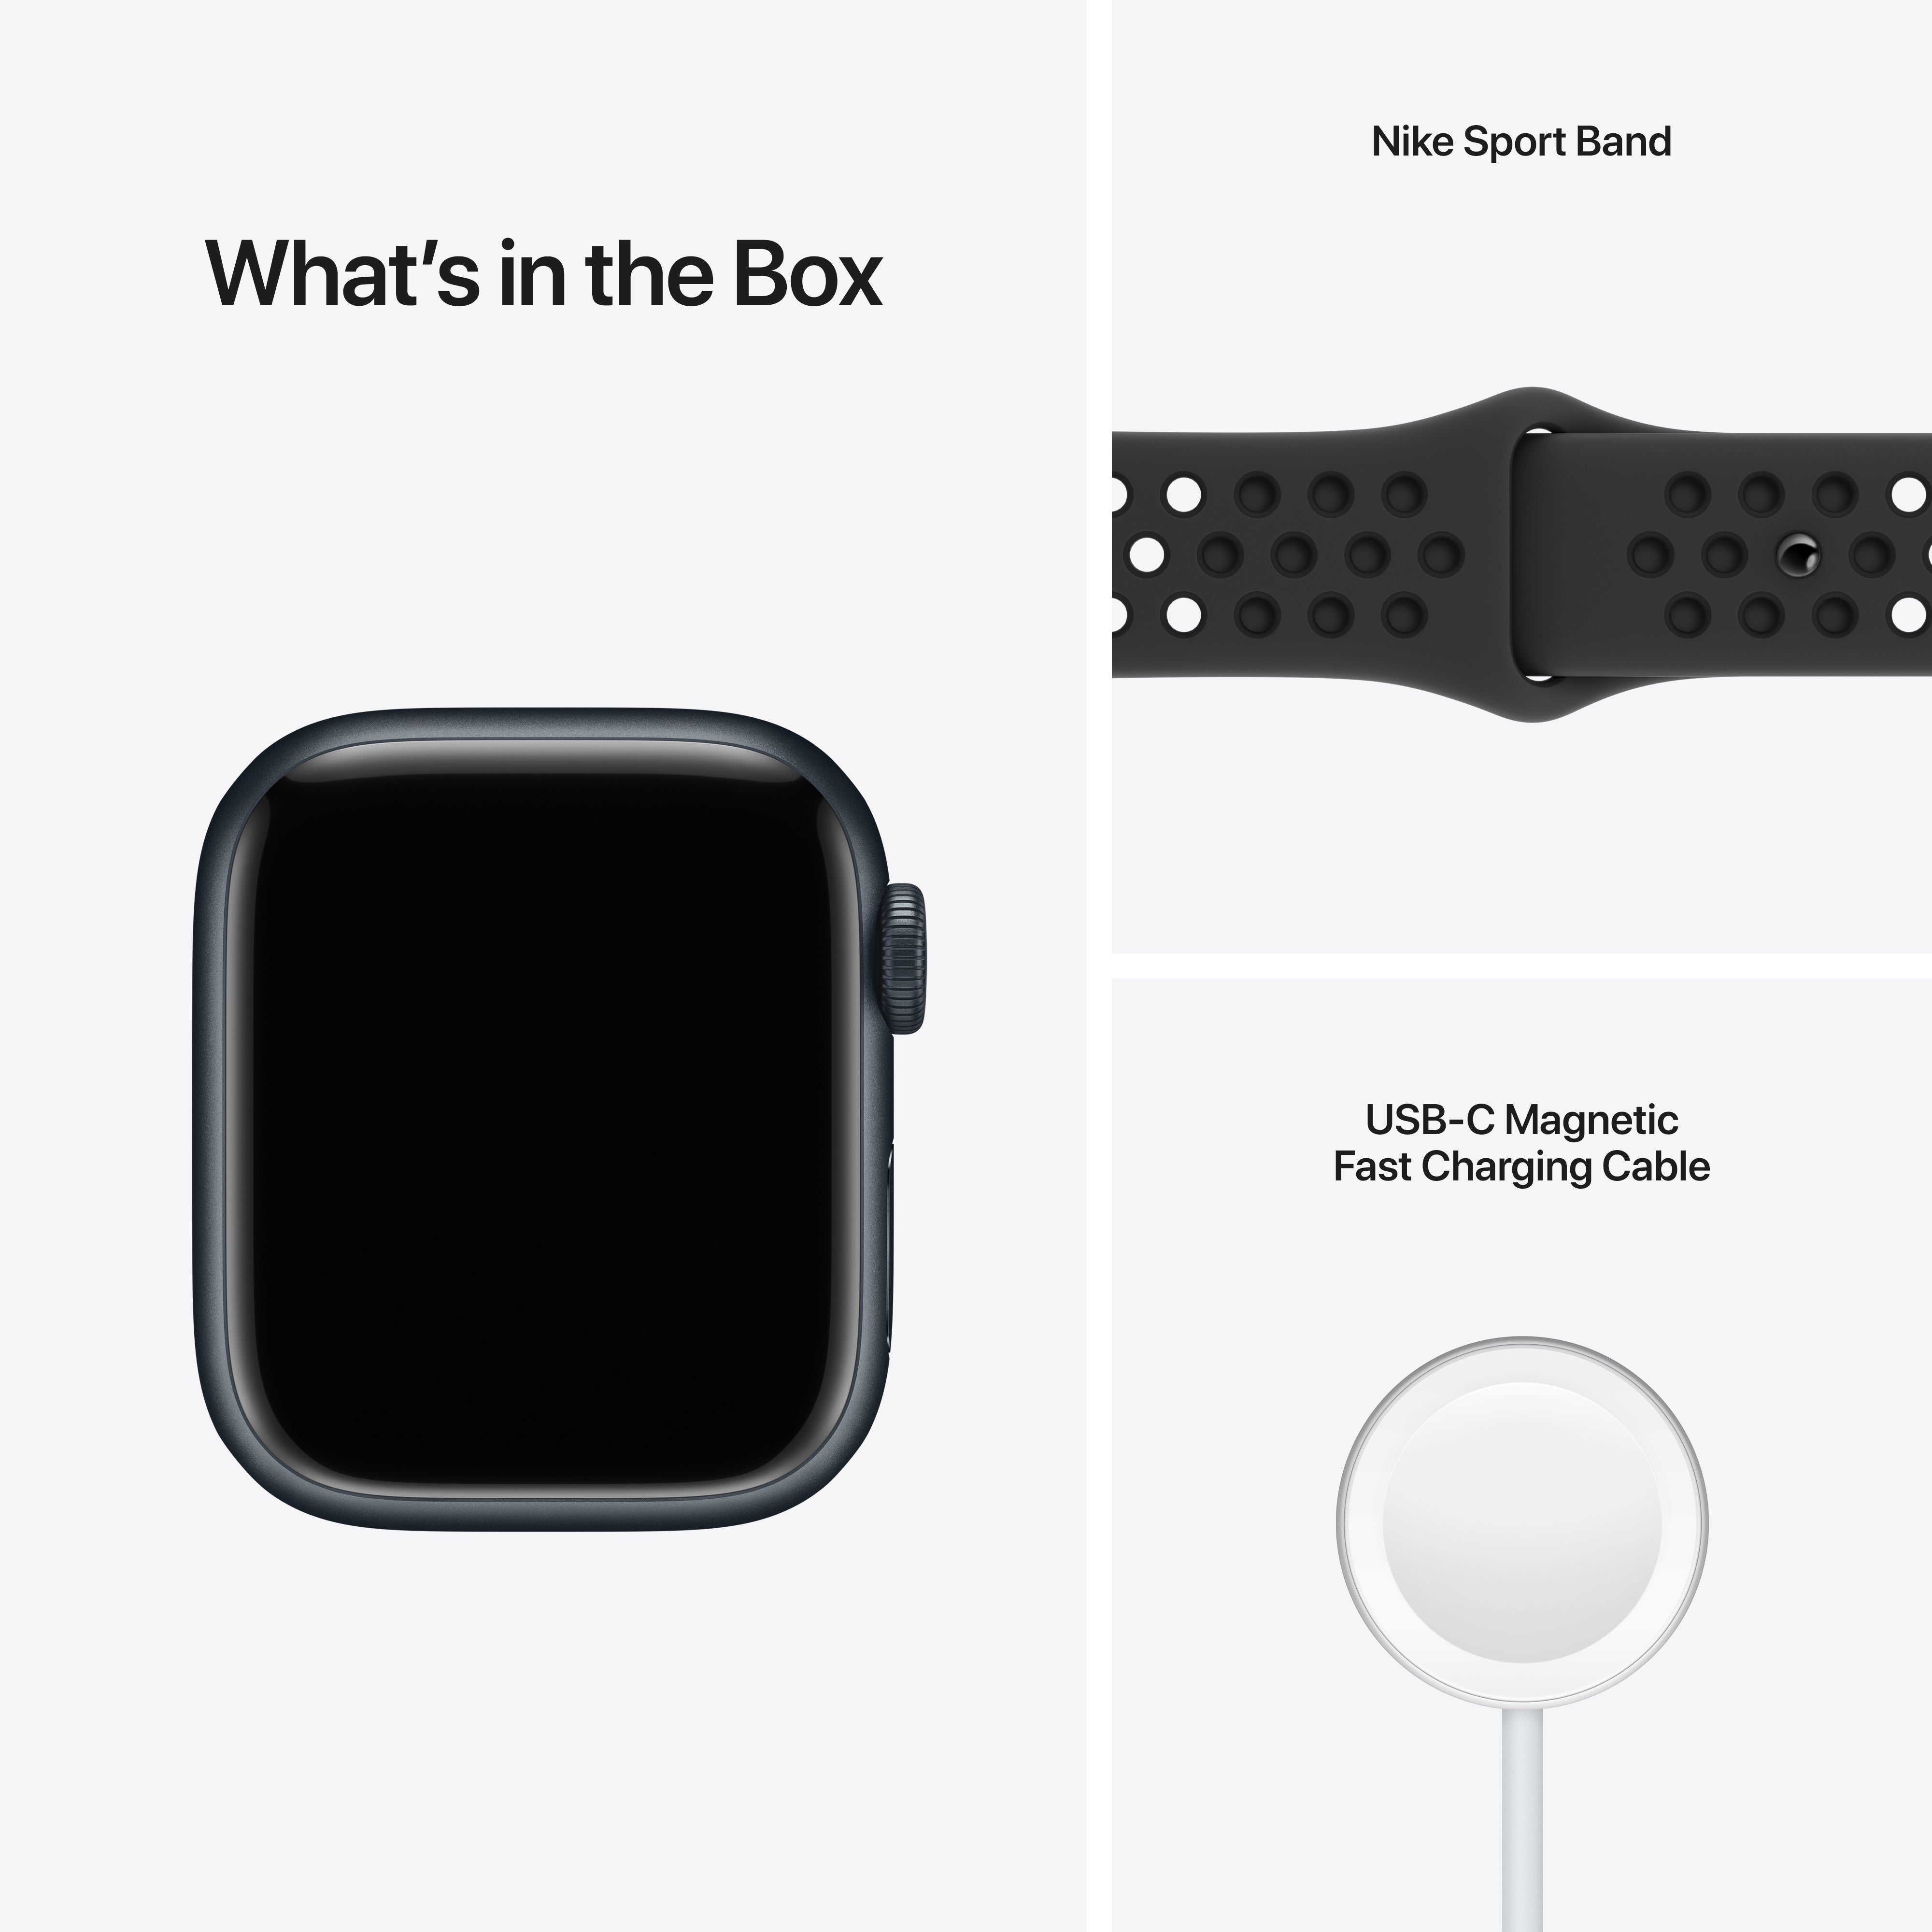 Apple Watch Nike Series 7 GPS